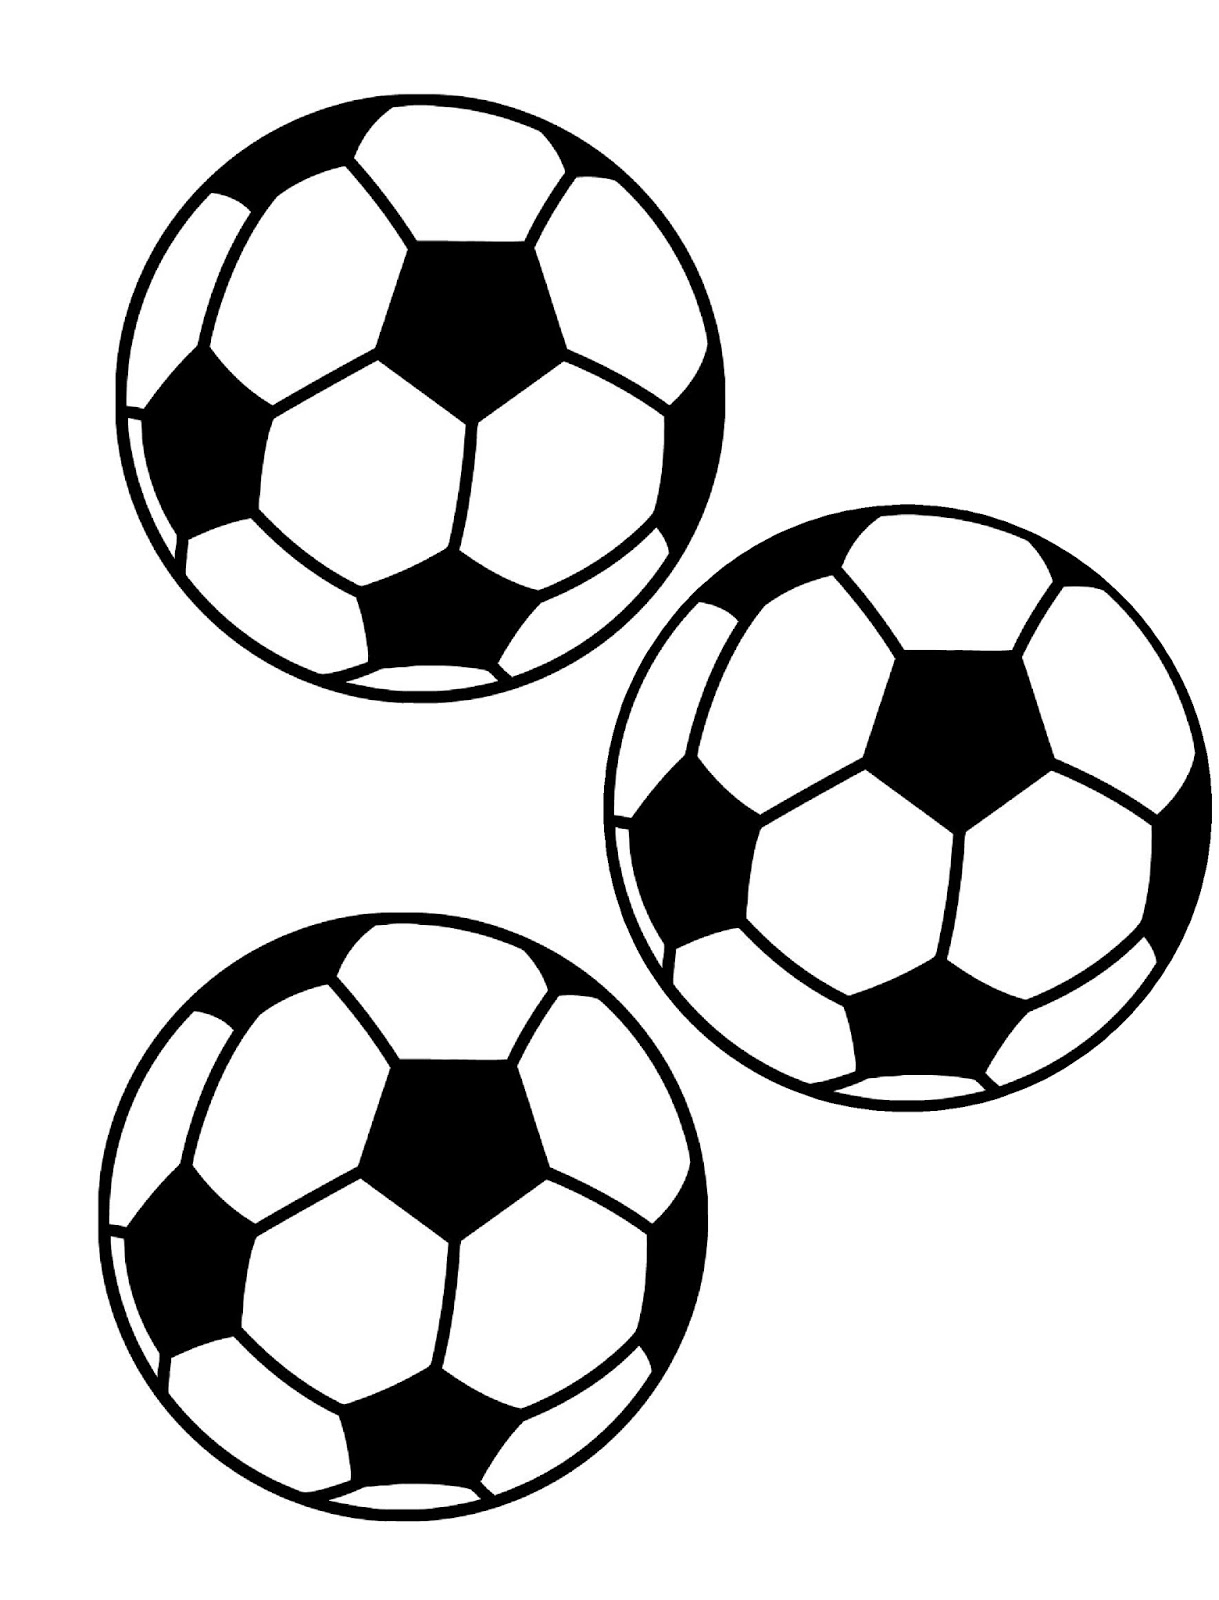 Soccer Ball Printable Image - Printable Blank World